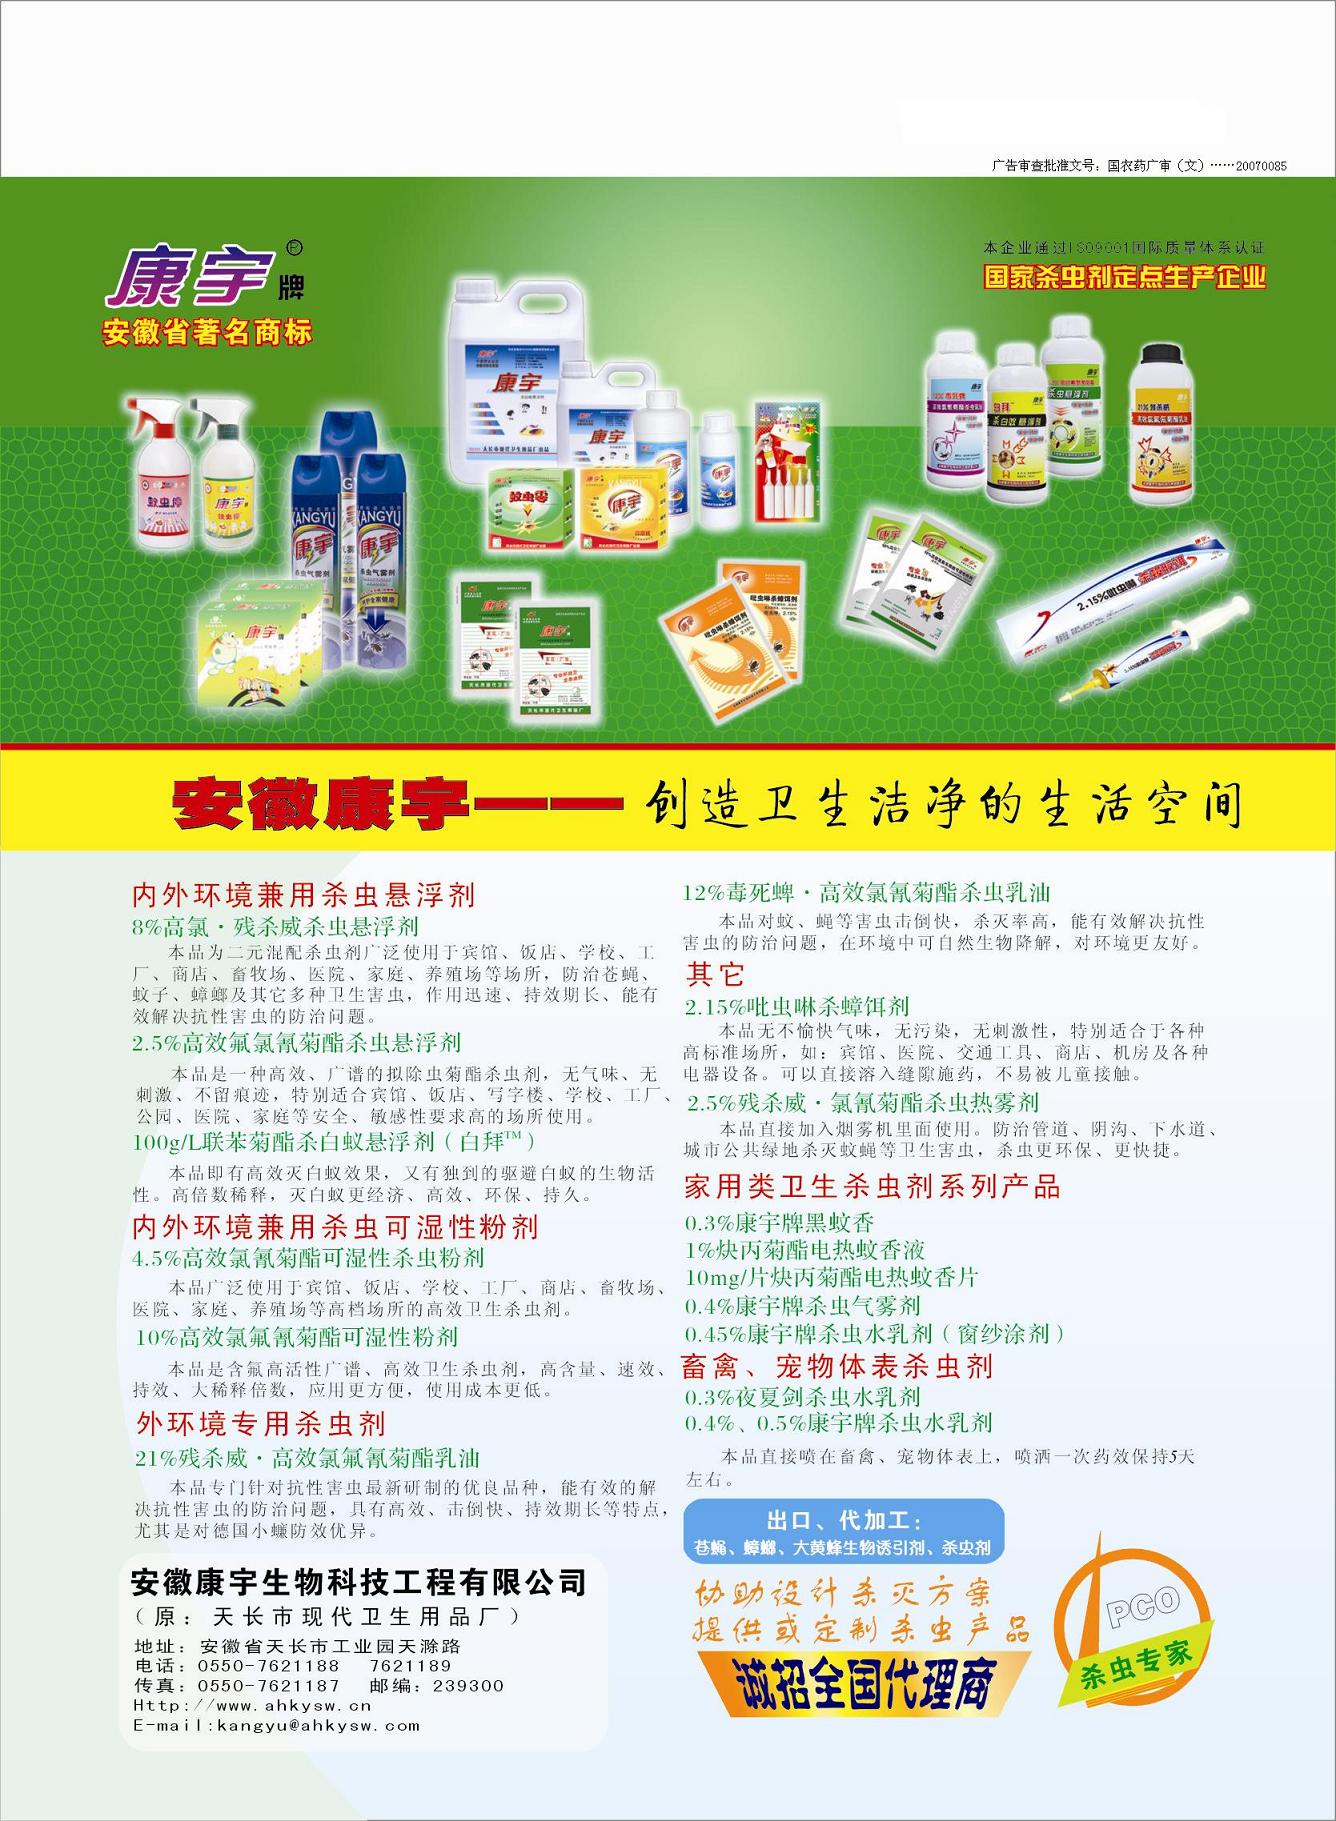 《中华卫生杀虫药械》广告